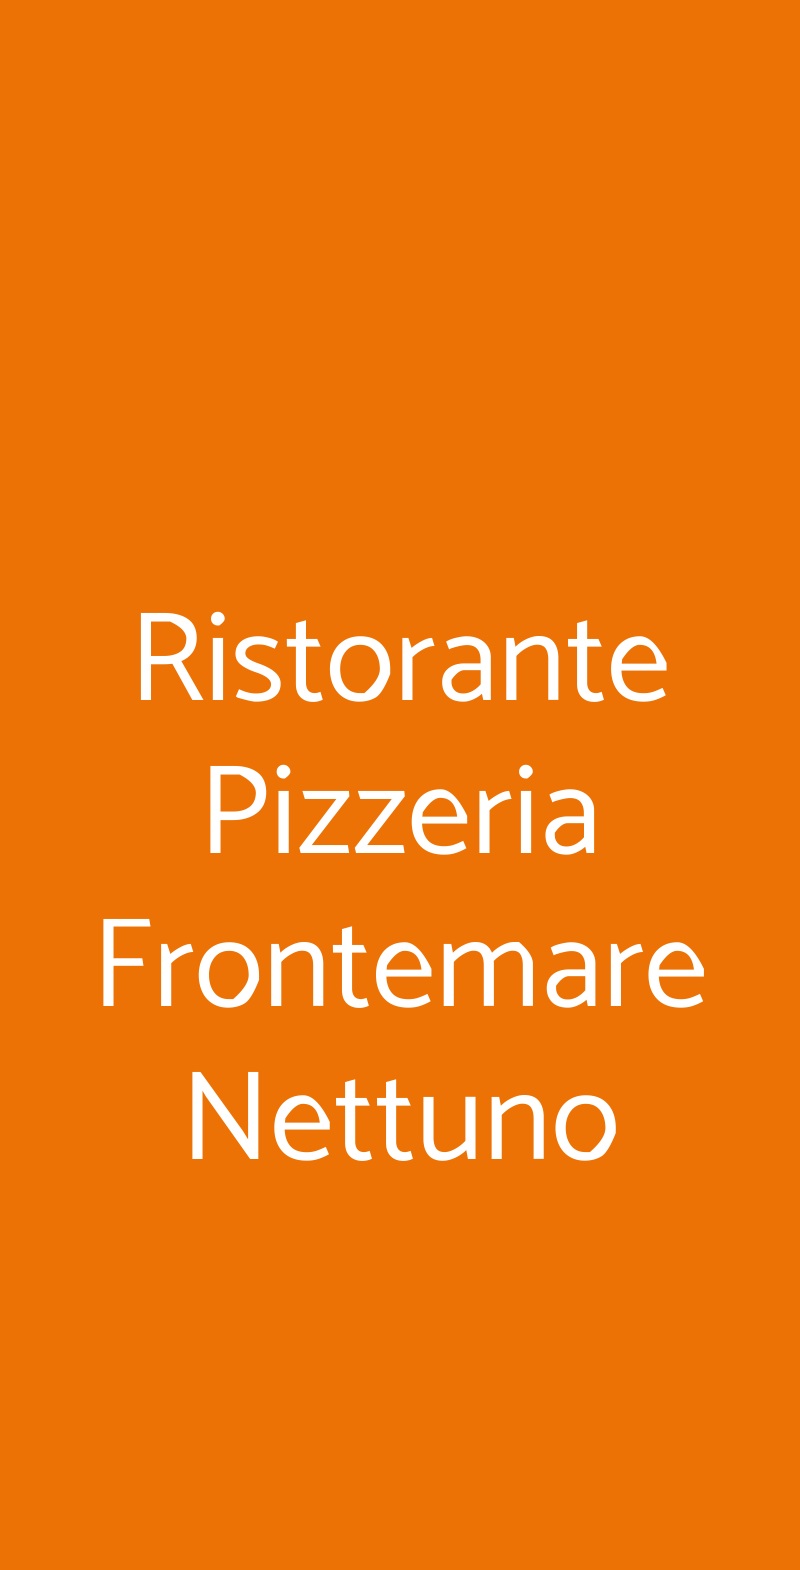 Ristorante Pizzeria Frontemare Nettuno Jesolo menù 1 pagina